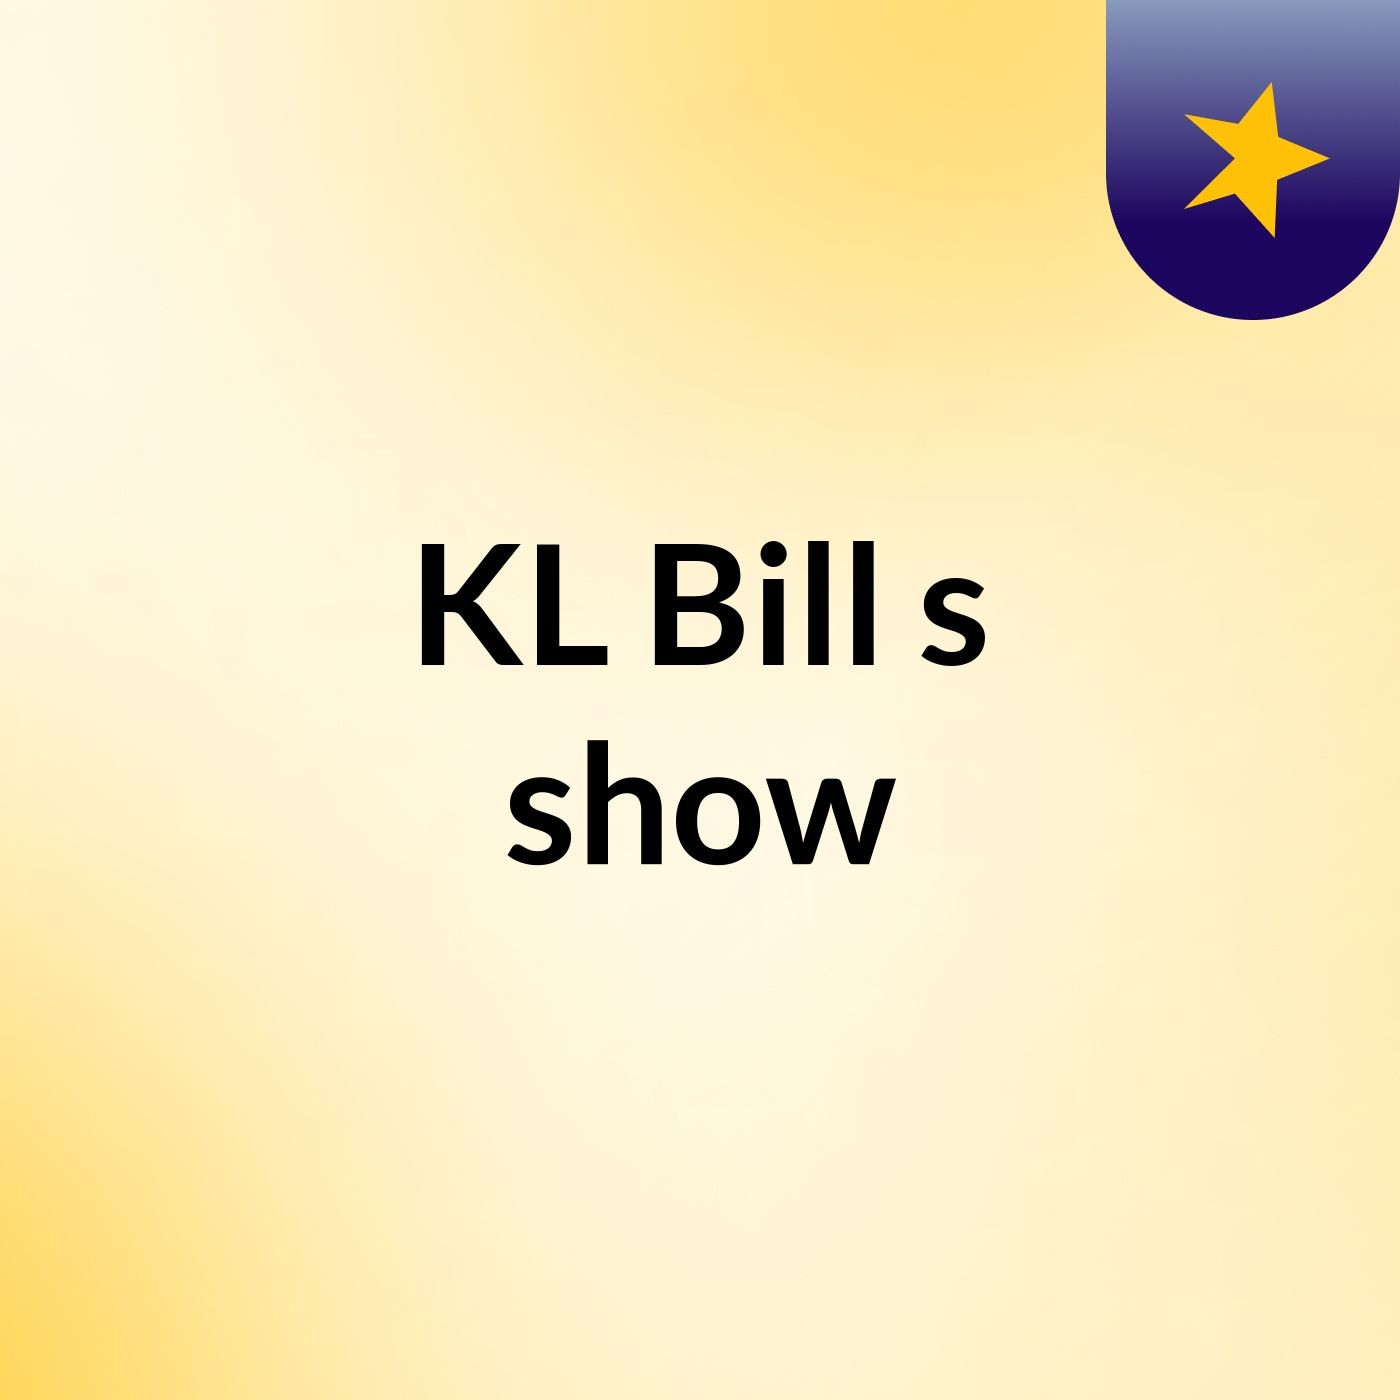 KL Bill's show